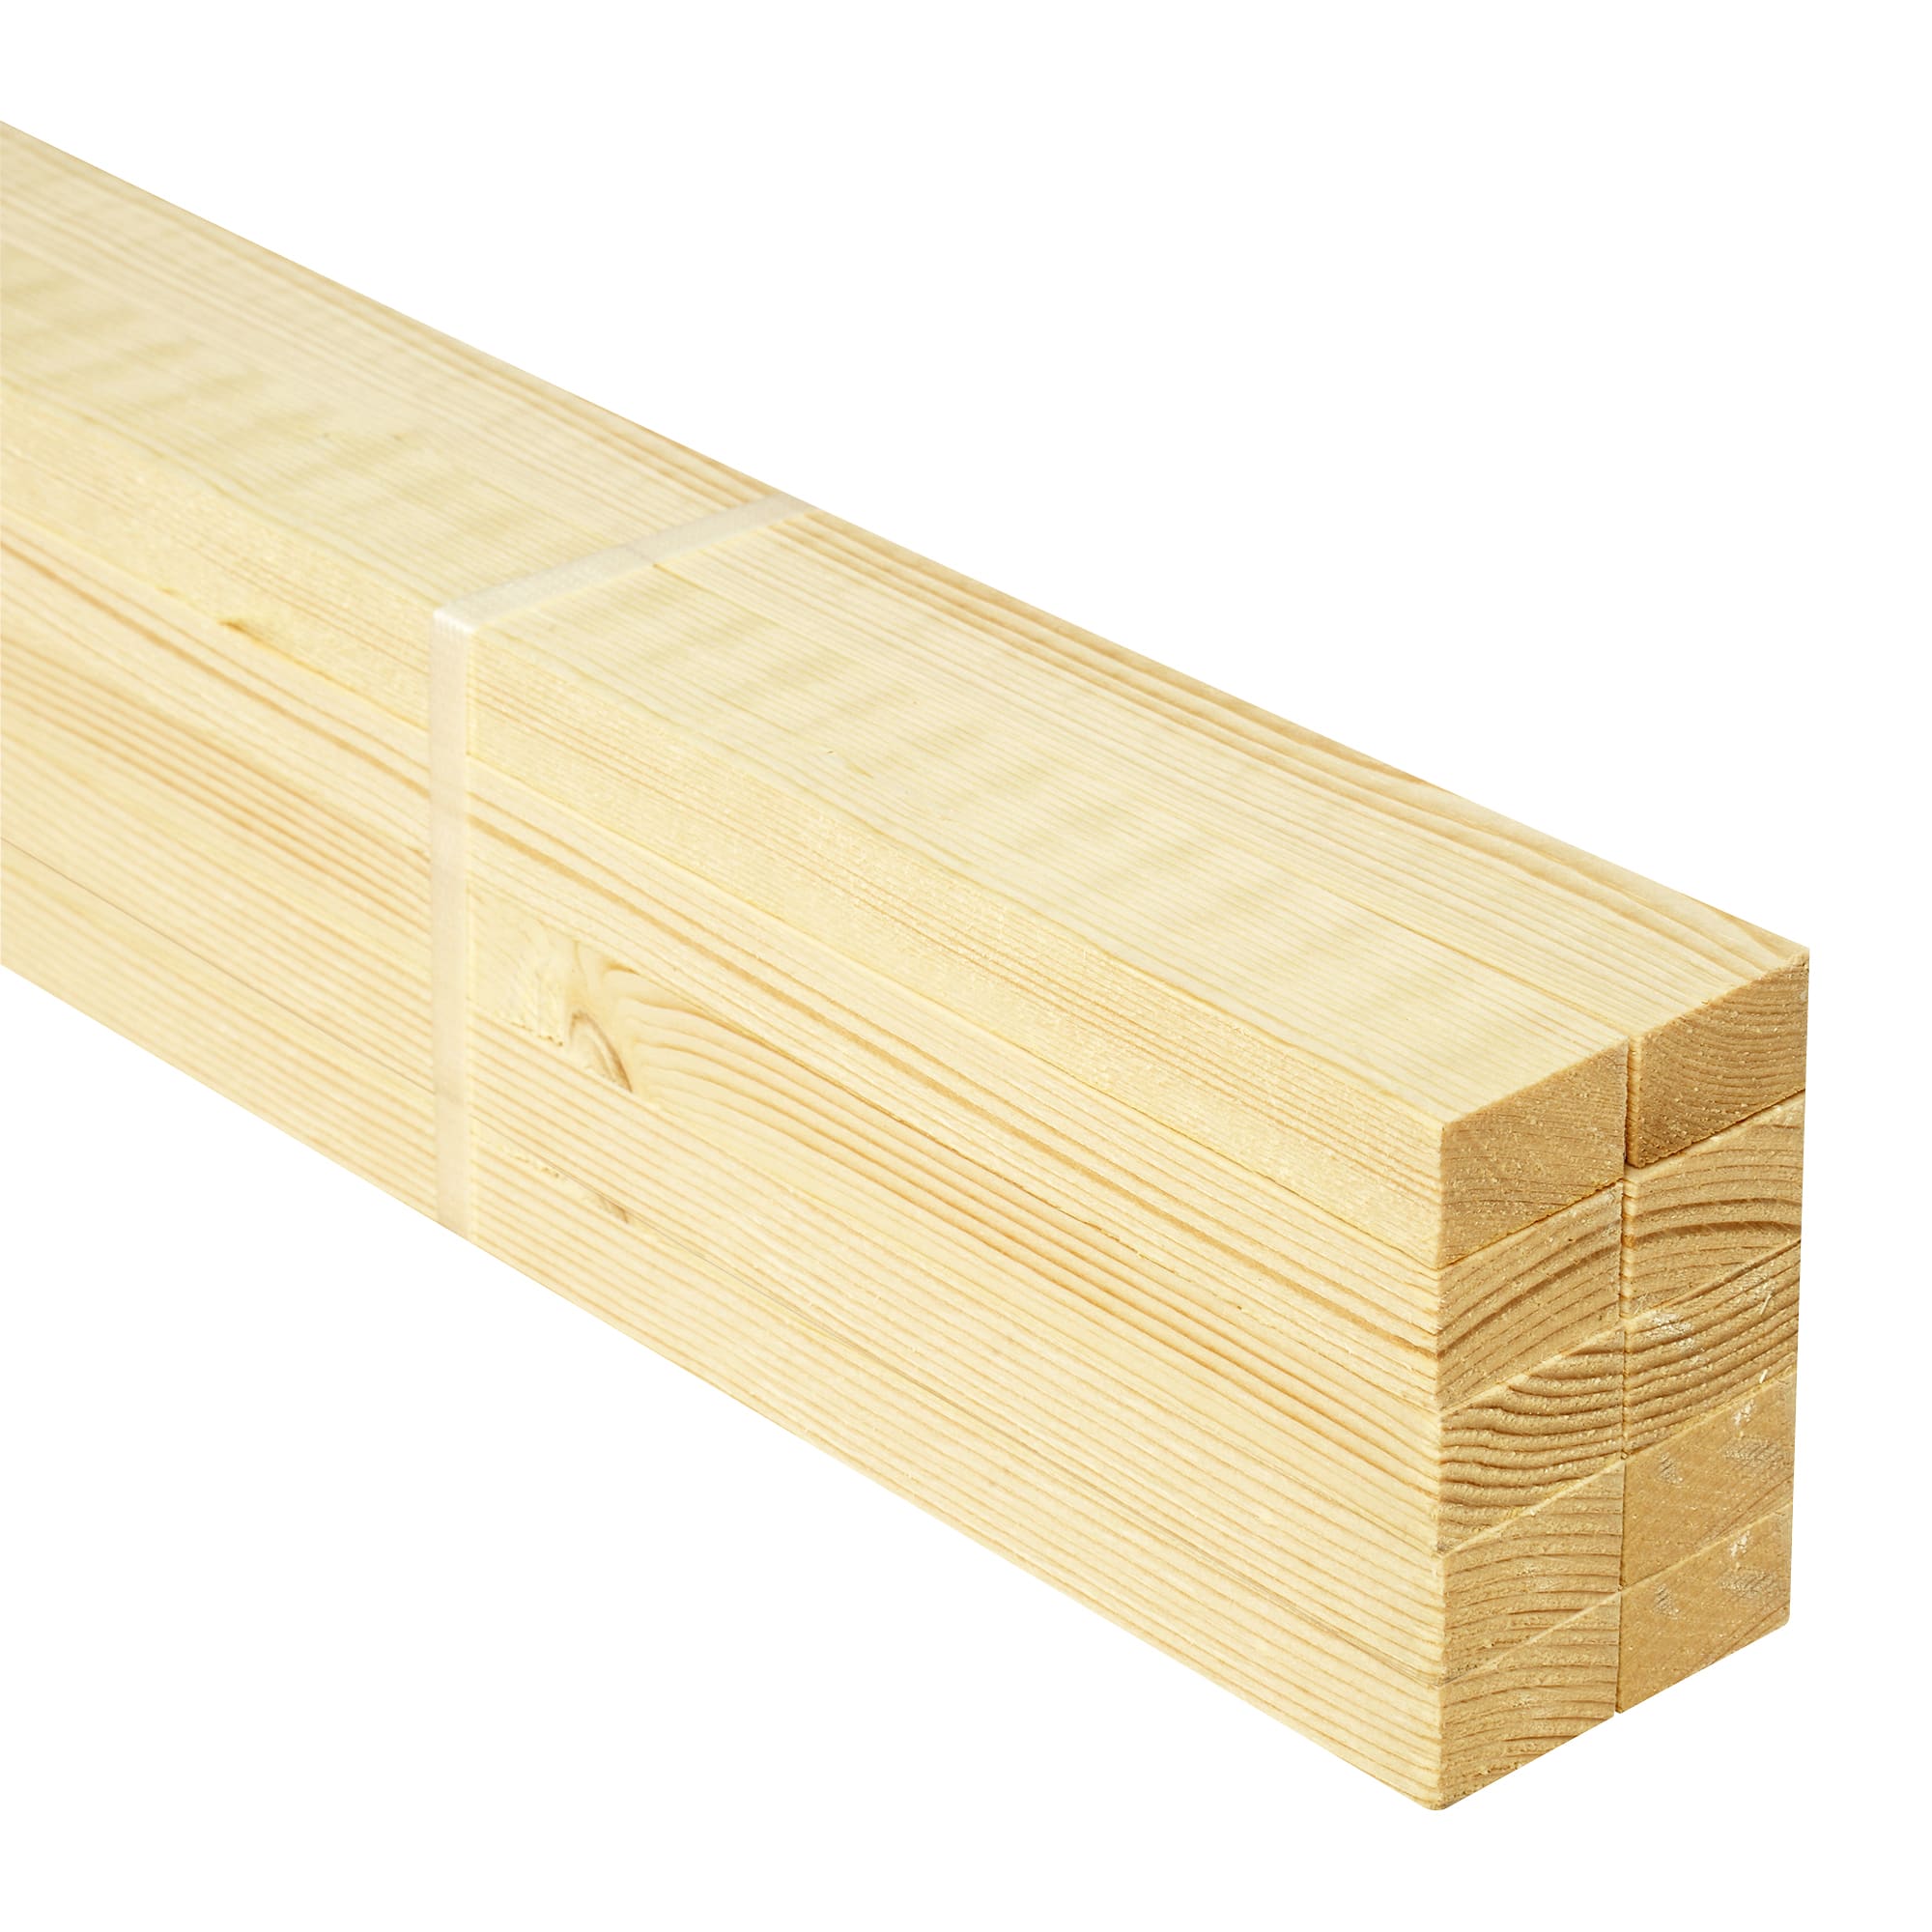 Wickes Sawn Kiln Dried Timber - 19 x